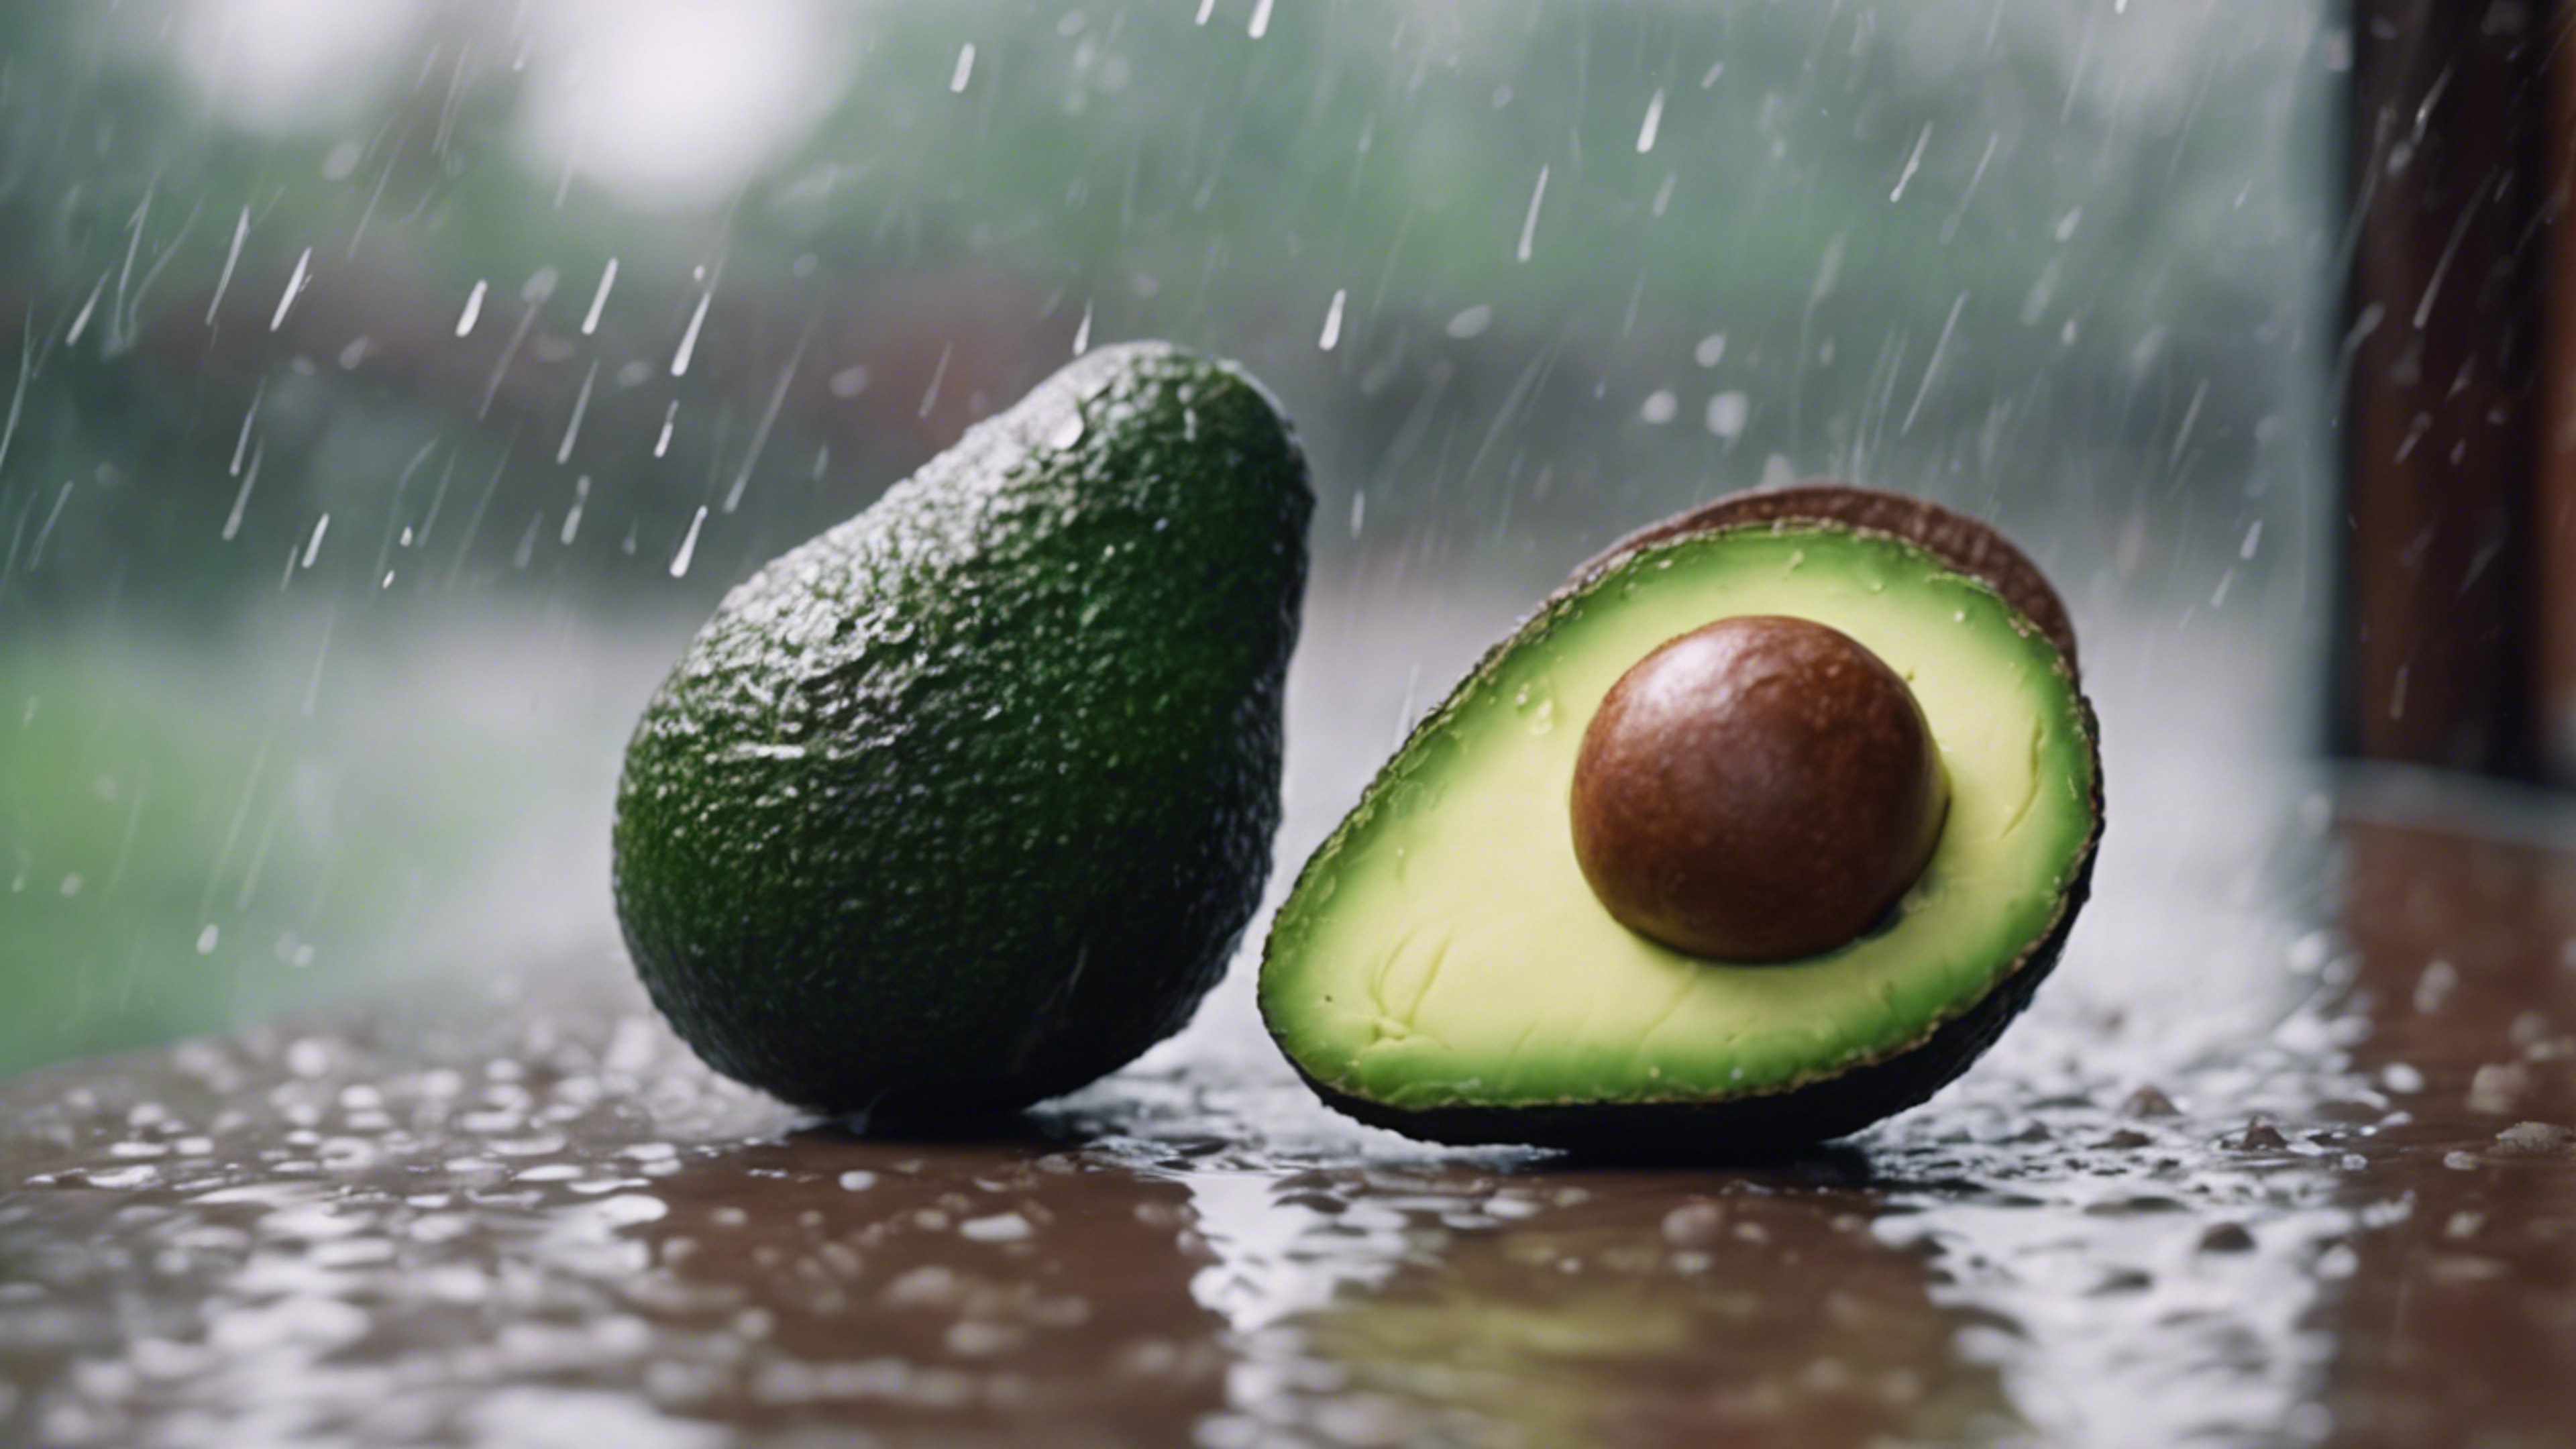 An adorable avocado in a quiet reflection on a rainy day Wallpaper[1229e2b9e9634c7f8c86]